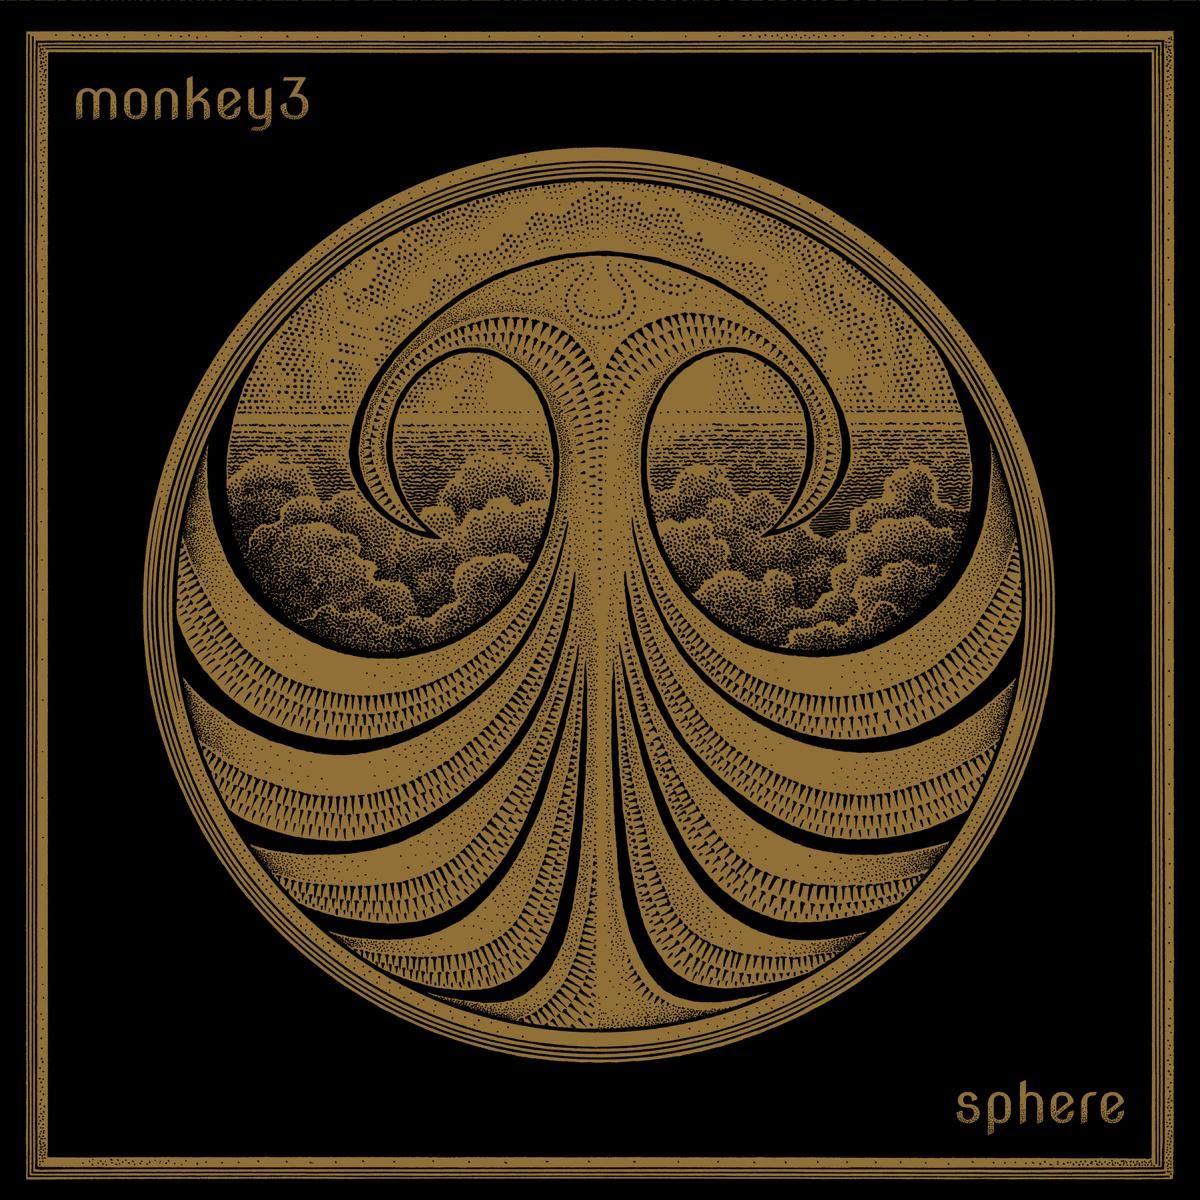 Neues Album "Sphere" für den 12. April angekündigt